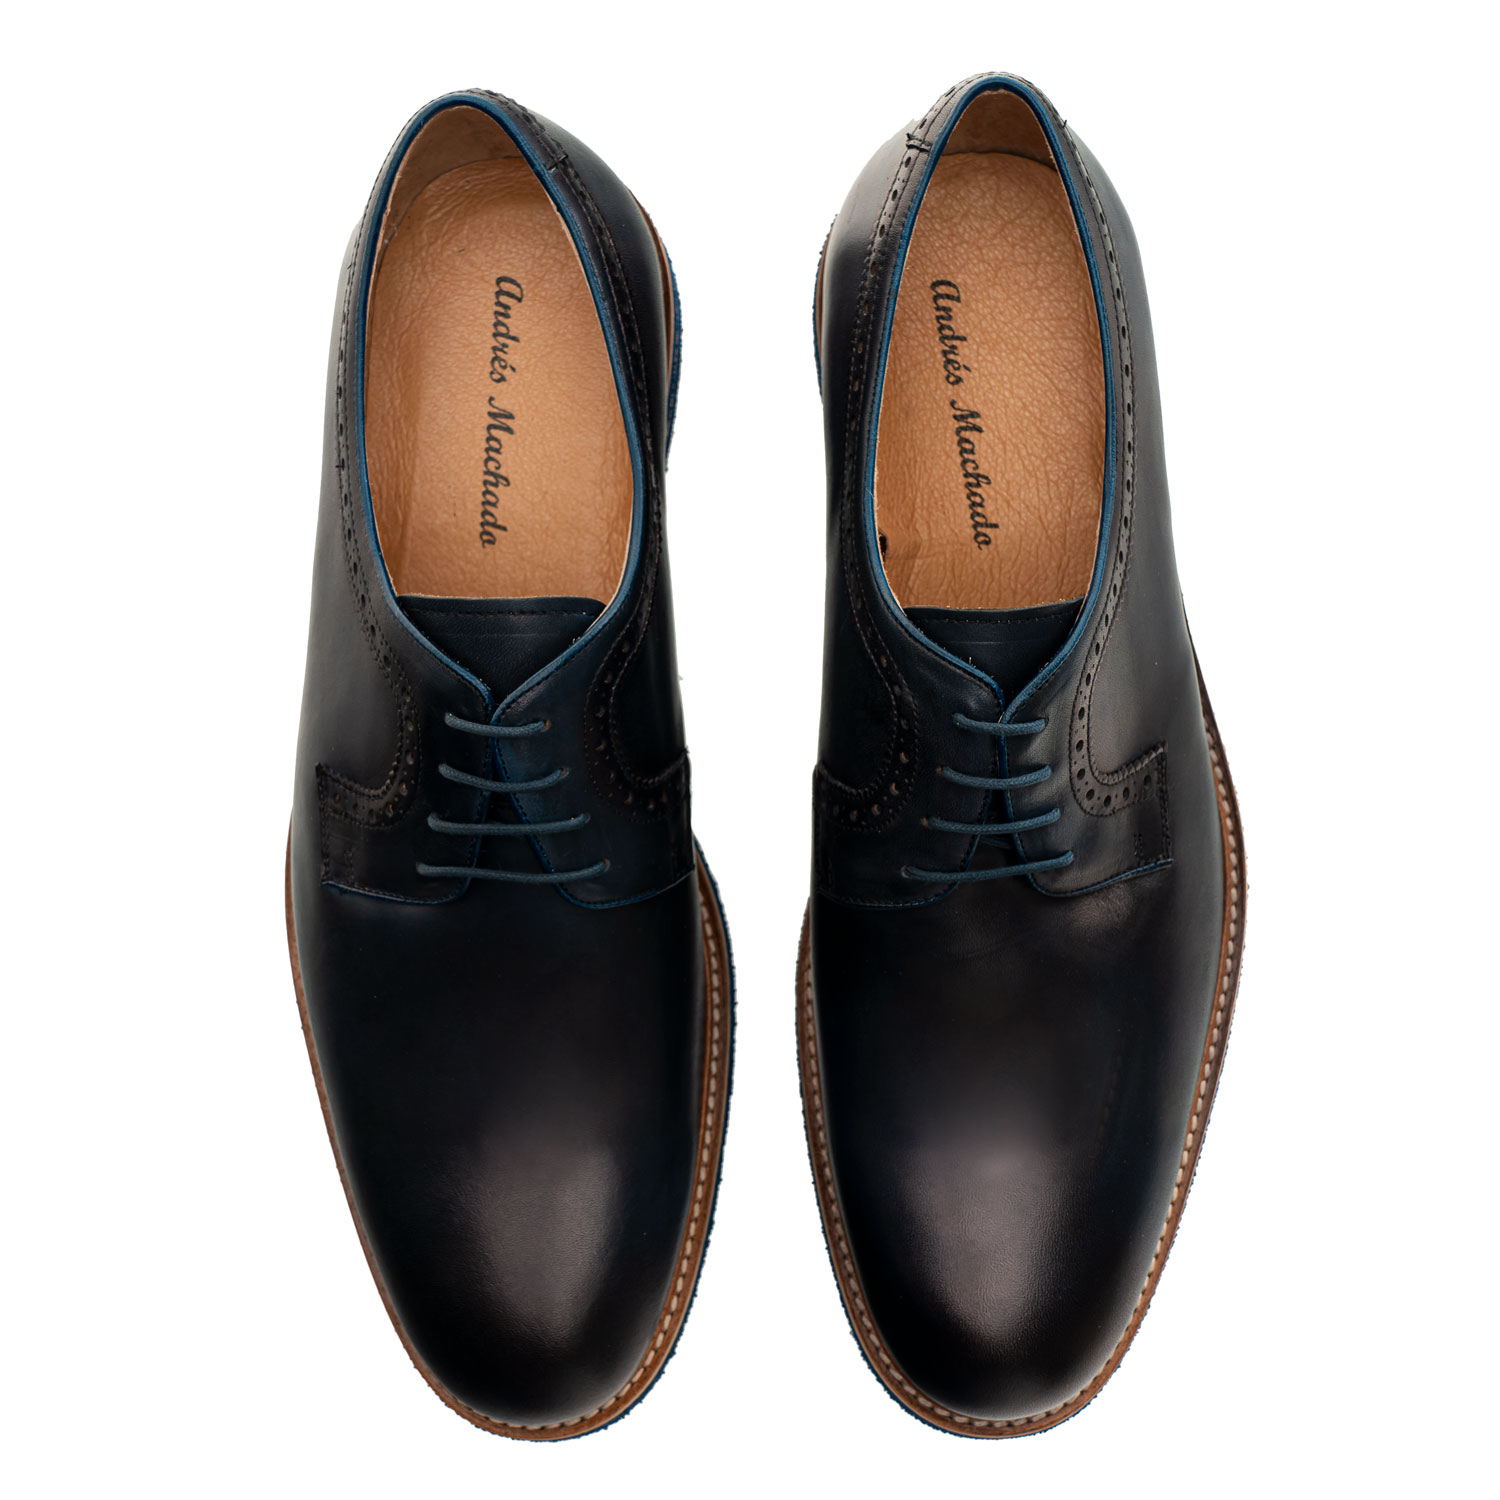 Chaussures pour Hommes style Oxford en cuir Bleu Marine 